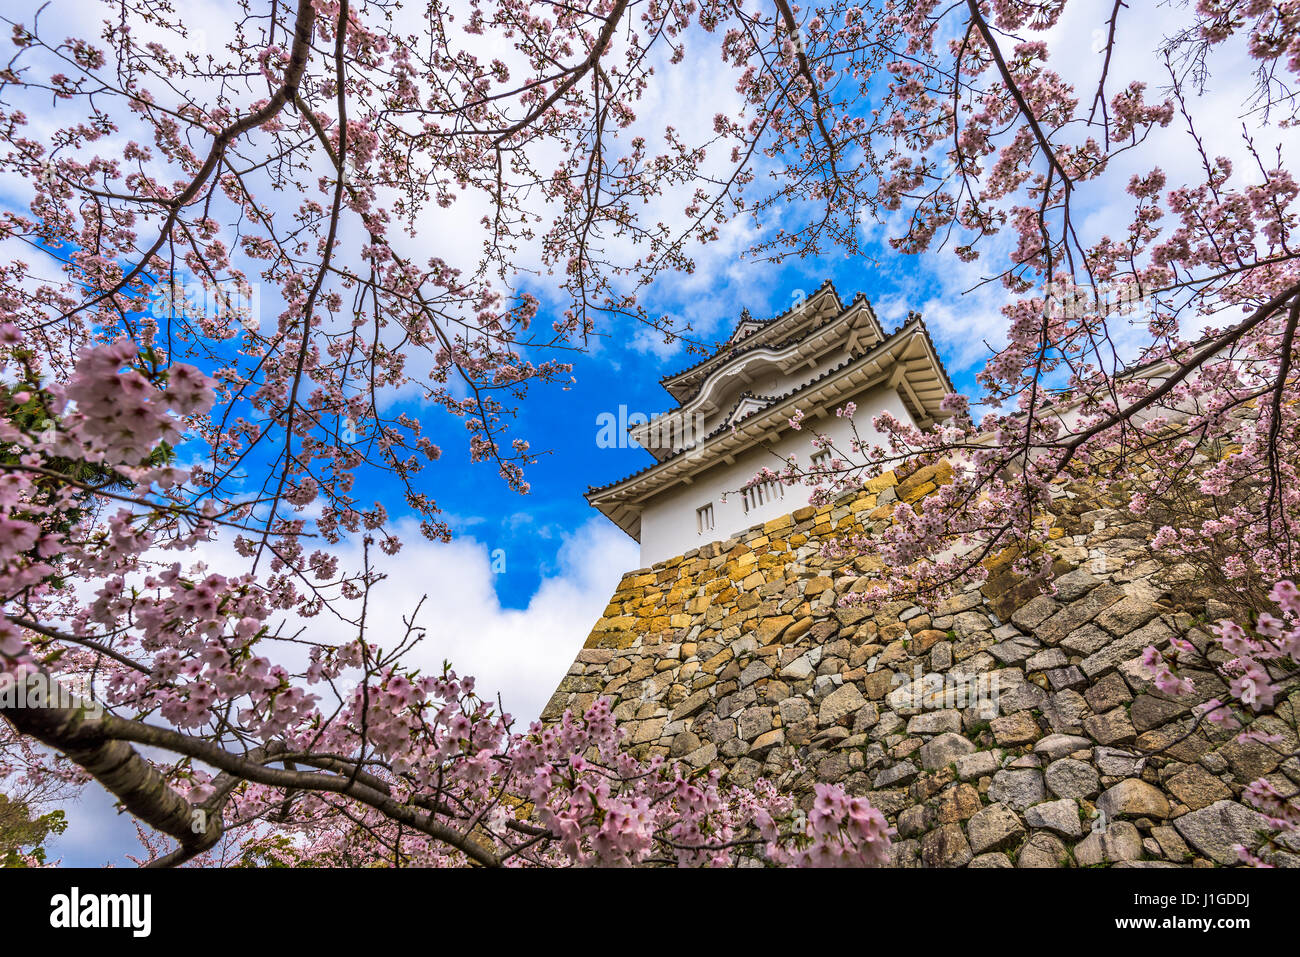 Akashi, Japan at Akashi Castle in spring. Stock Photo